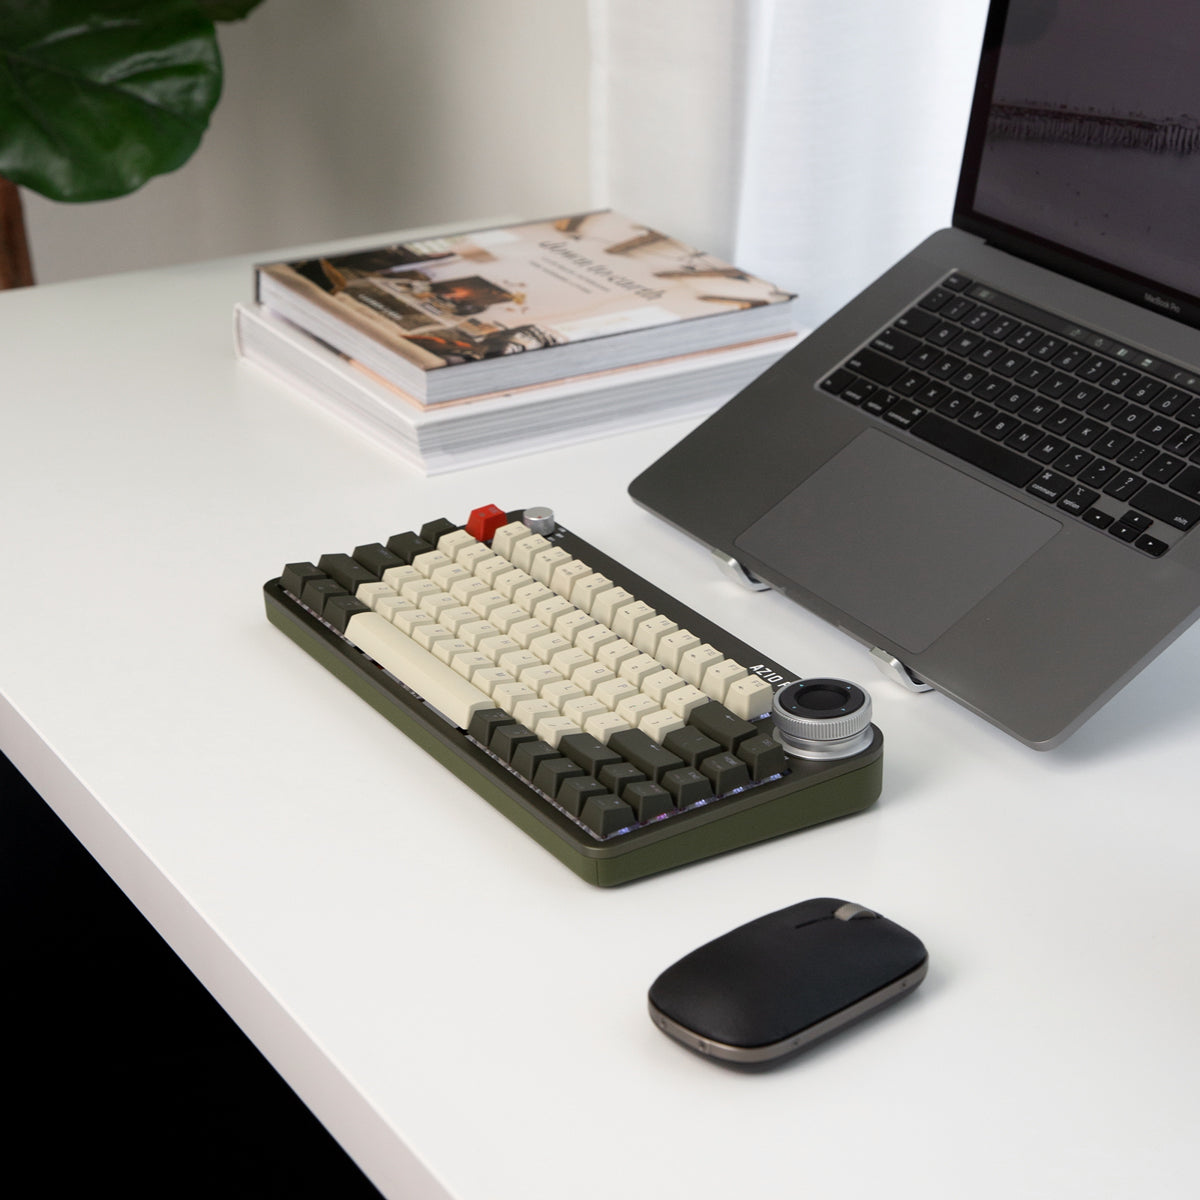 Bezprzewodowa klawiatura Foqo pro z możliwością wymiany podczas pracy